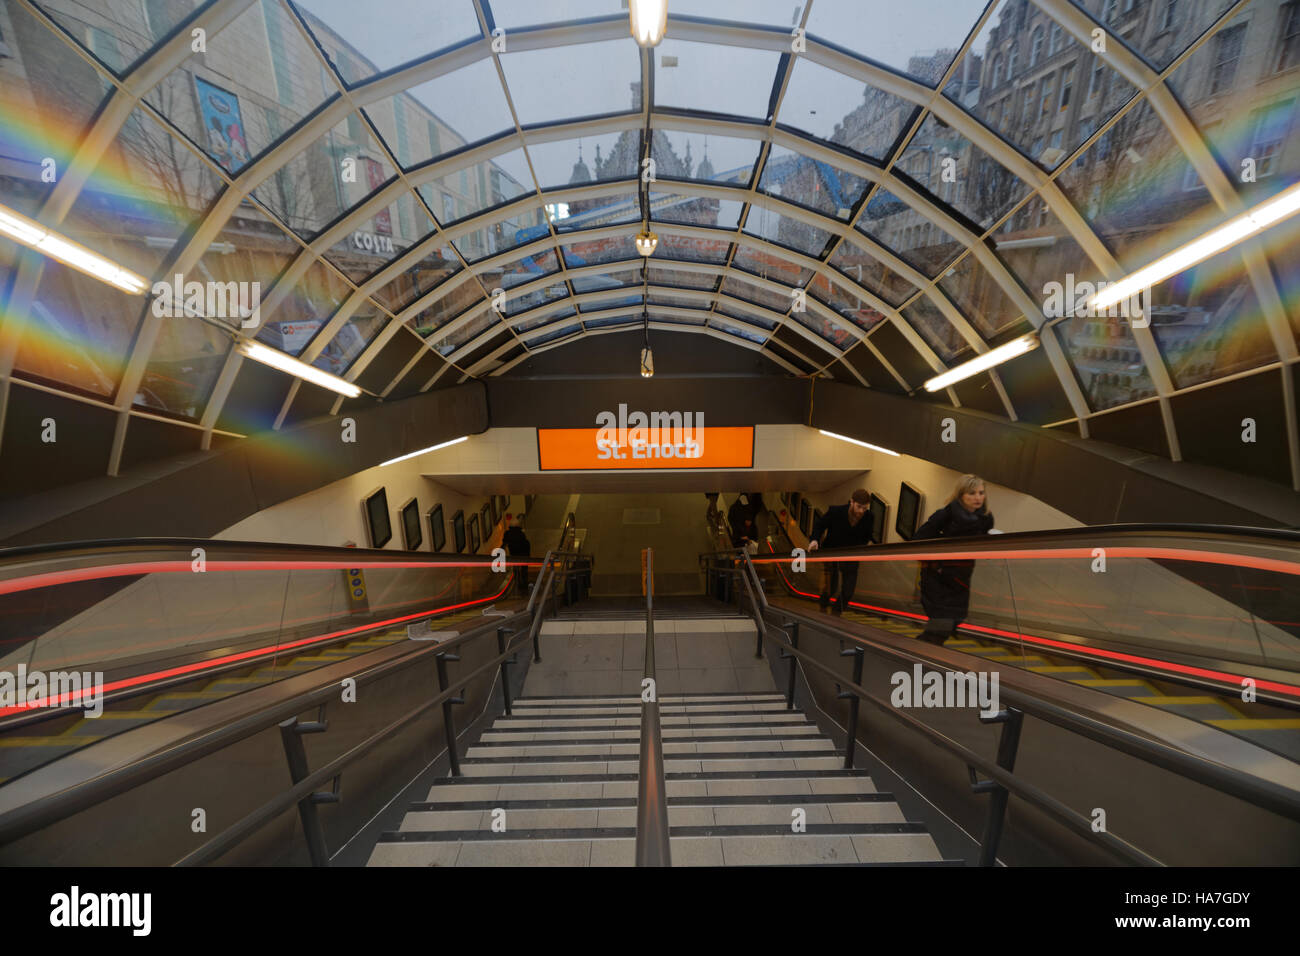 Entrée du métro ou métro de Glasgow escaliers escalier mécanique à la station St Enoch Banque D'Images